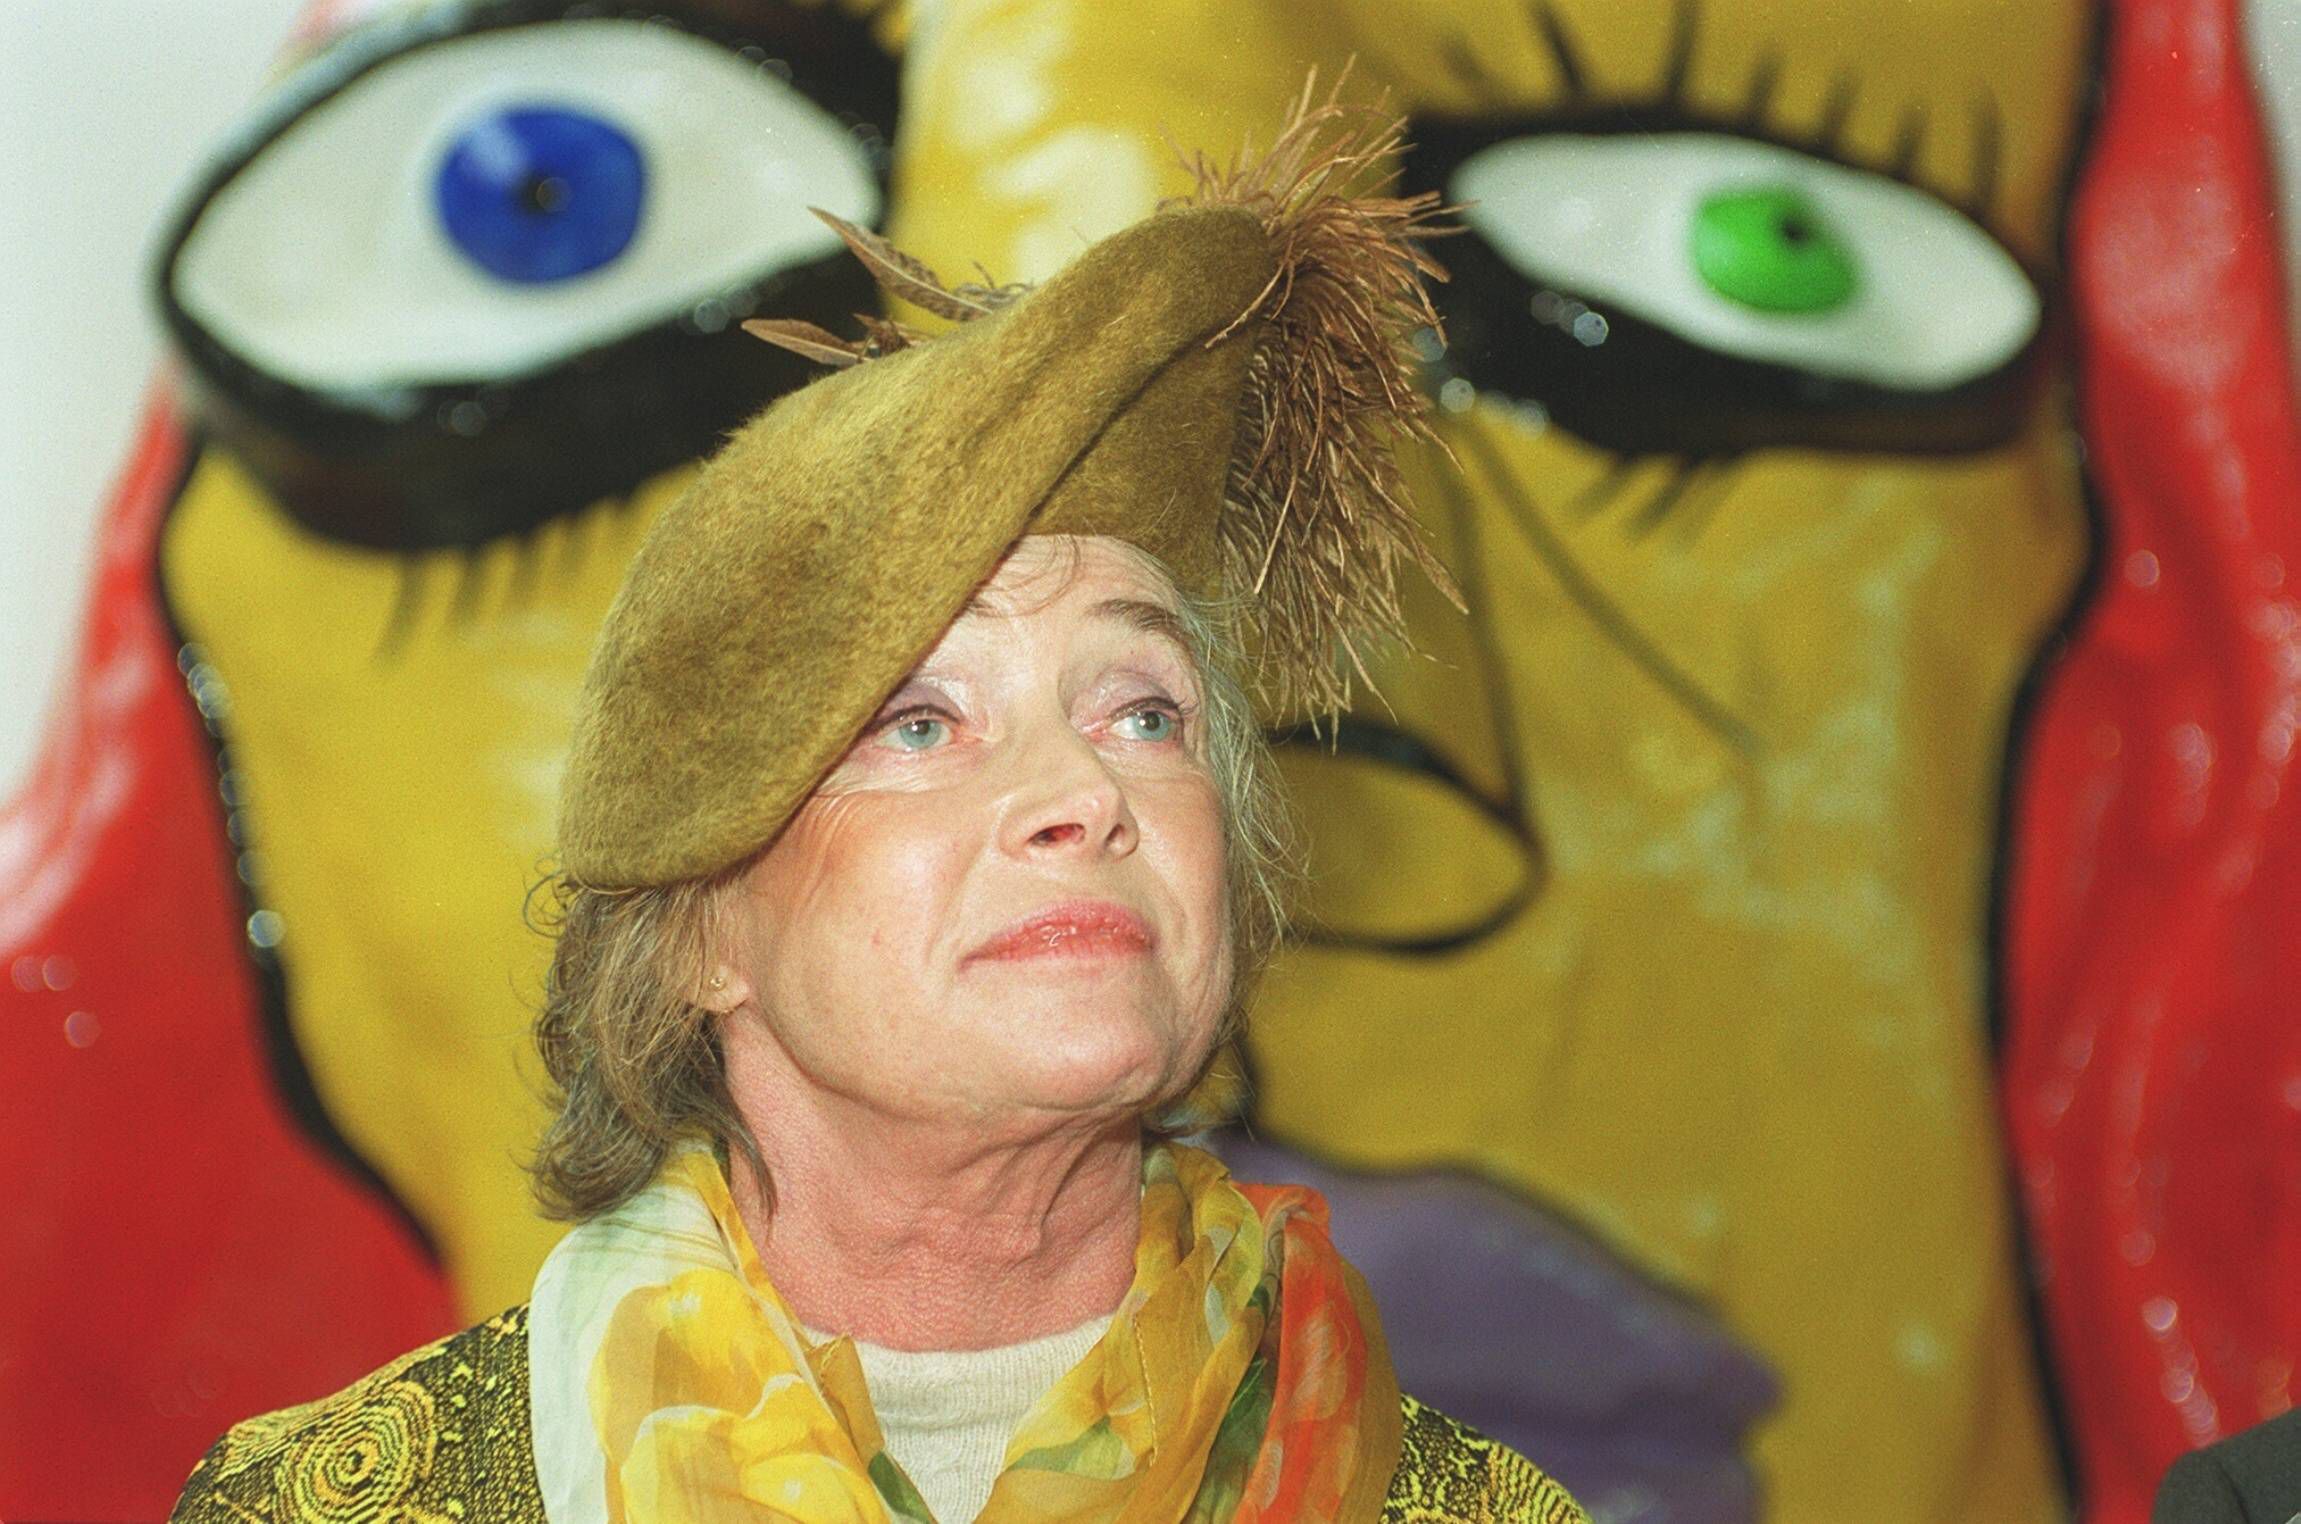 20. Todestag der Künstlerin - Niki de Saint Phalle: "Ich war ein skandalöses Subjekt"